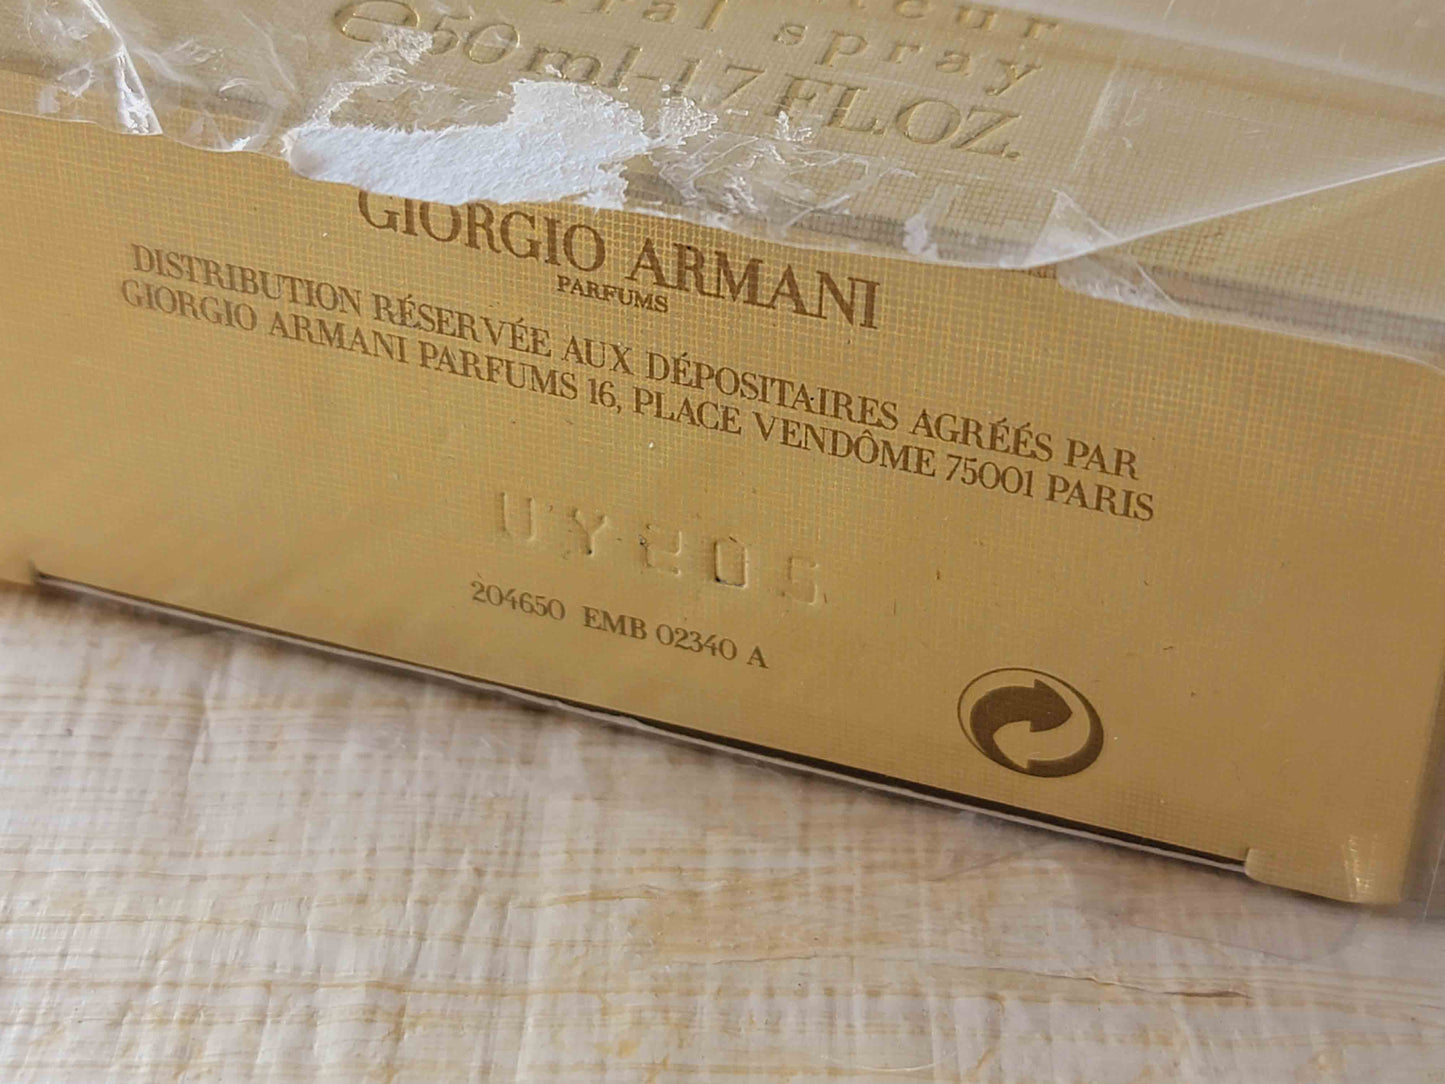 Giorgio Armani Sensi EDP Spray 100 ml 3.4 oz Or 50 ml 1.7 oz, Vintage